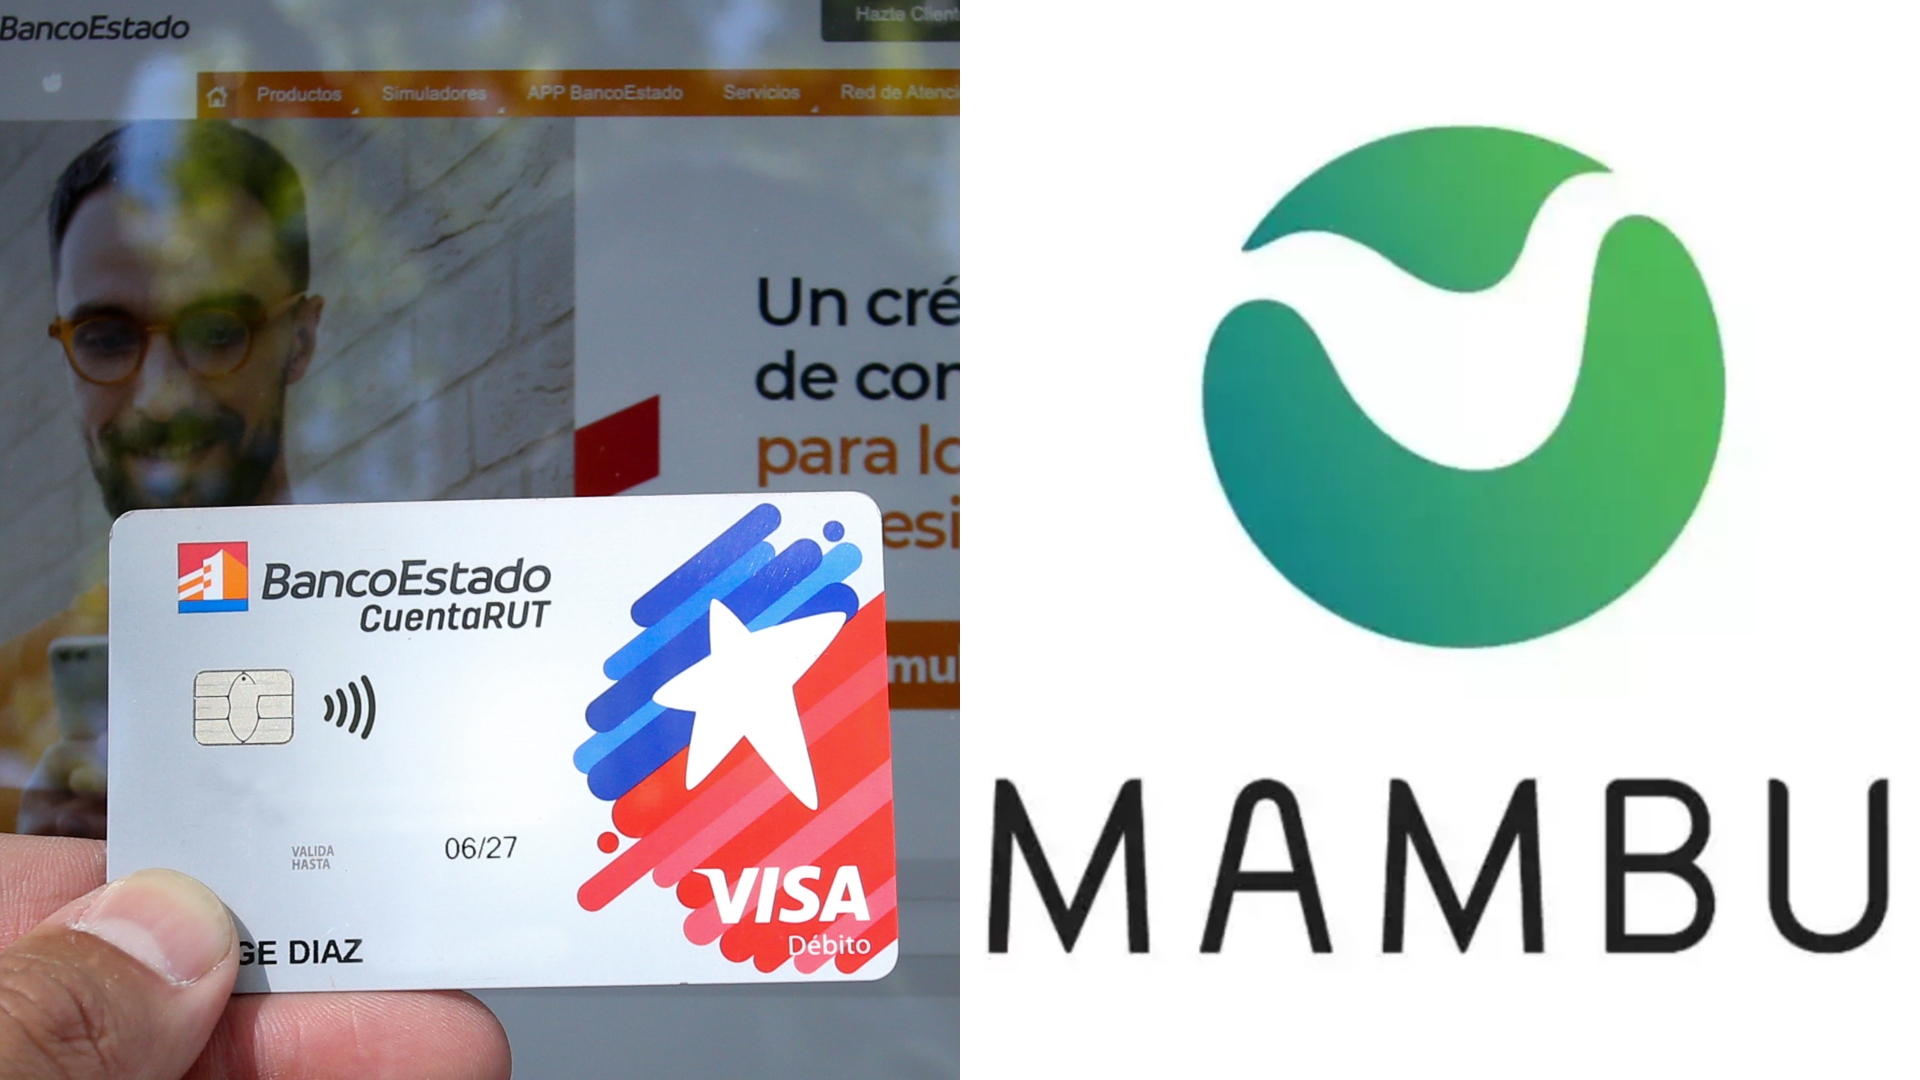 Migración de Cuenta RUT de BancoEstado a Mambu: expertos identifican los eventuales peligros para los clientes